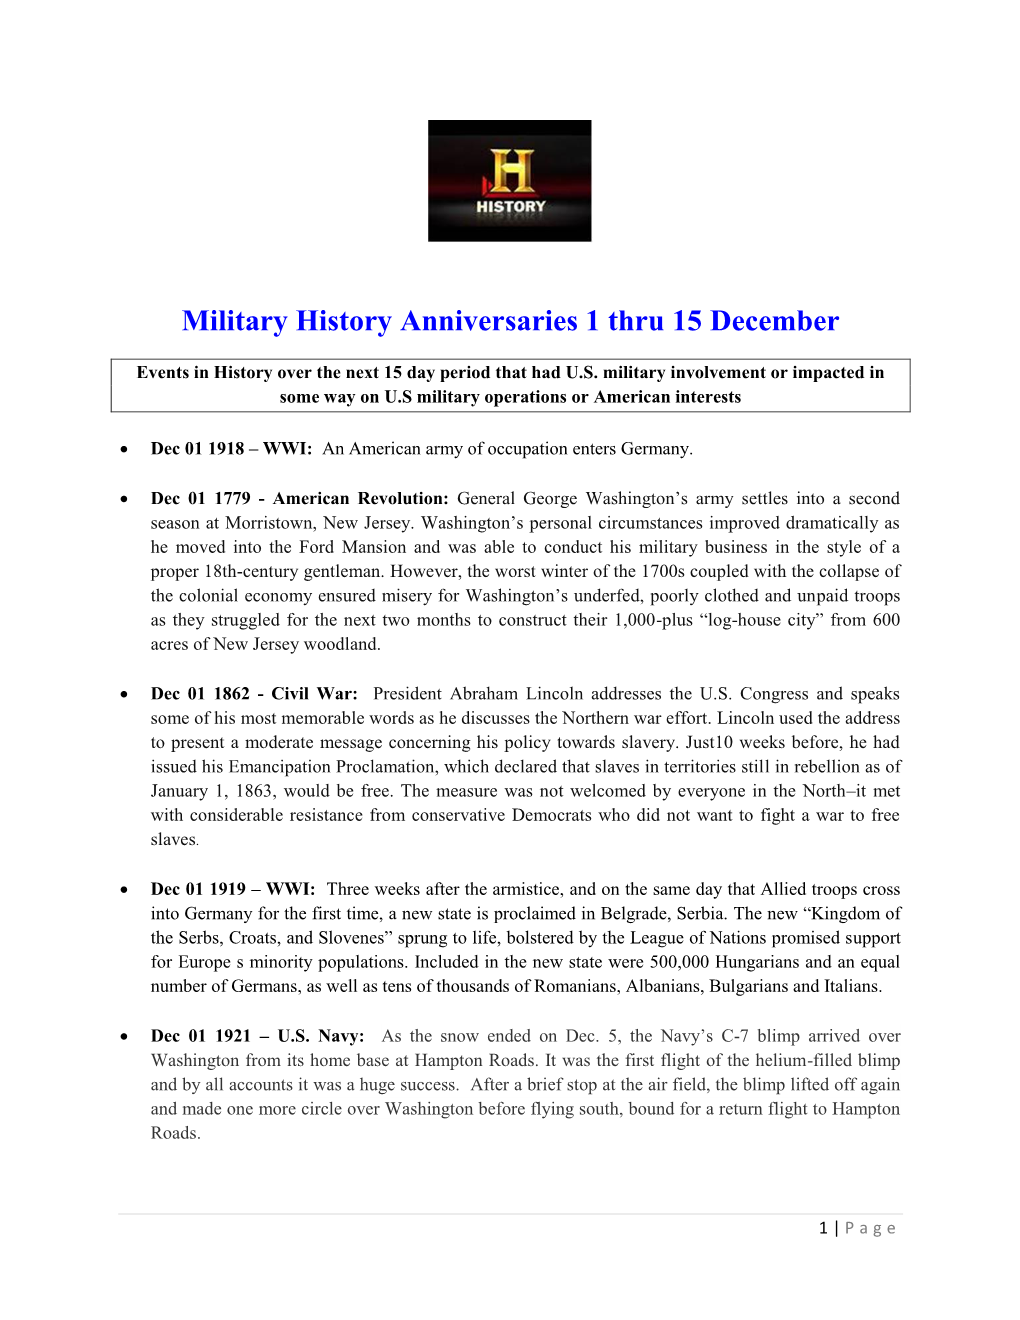 Military History Anniversaries 1201 Thru 121515